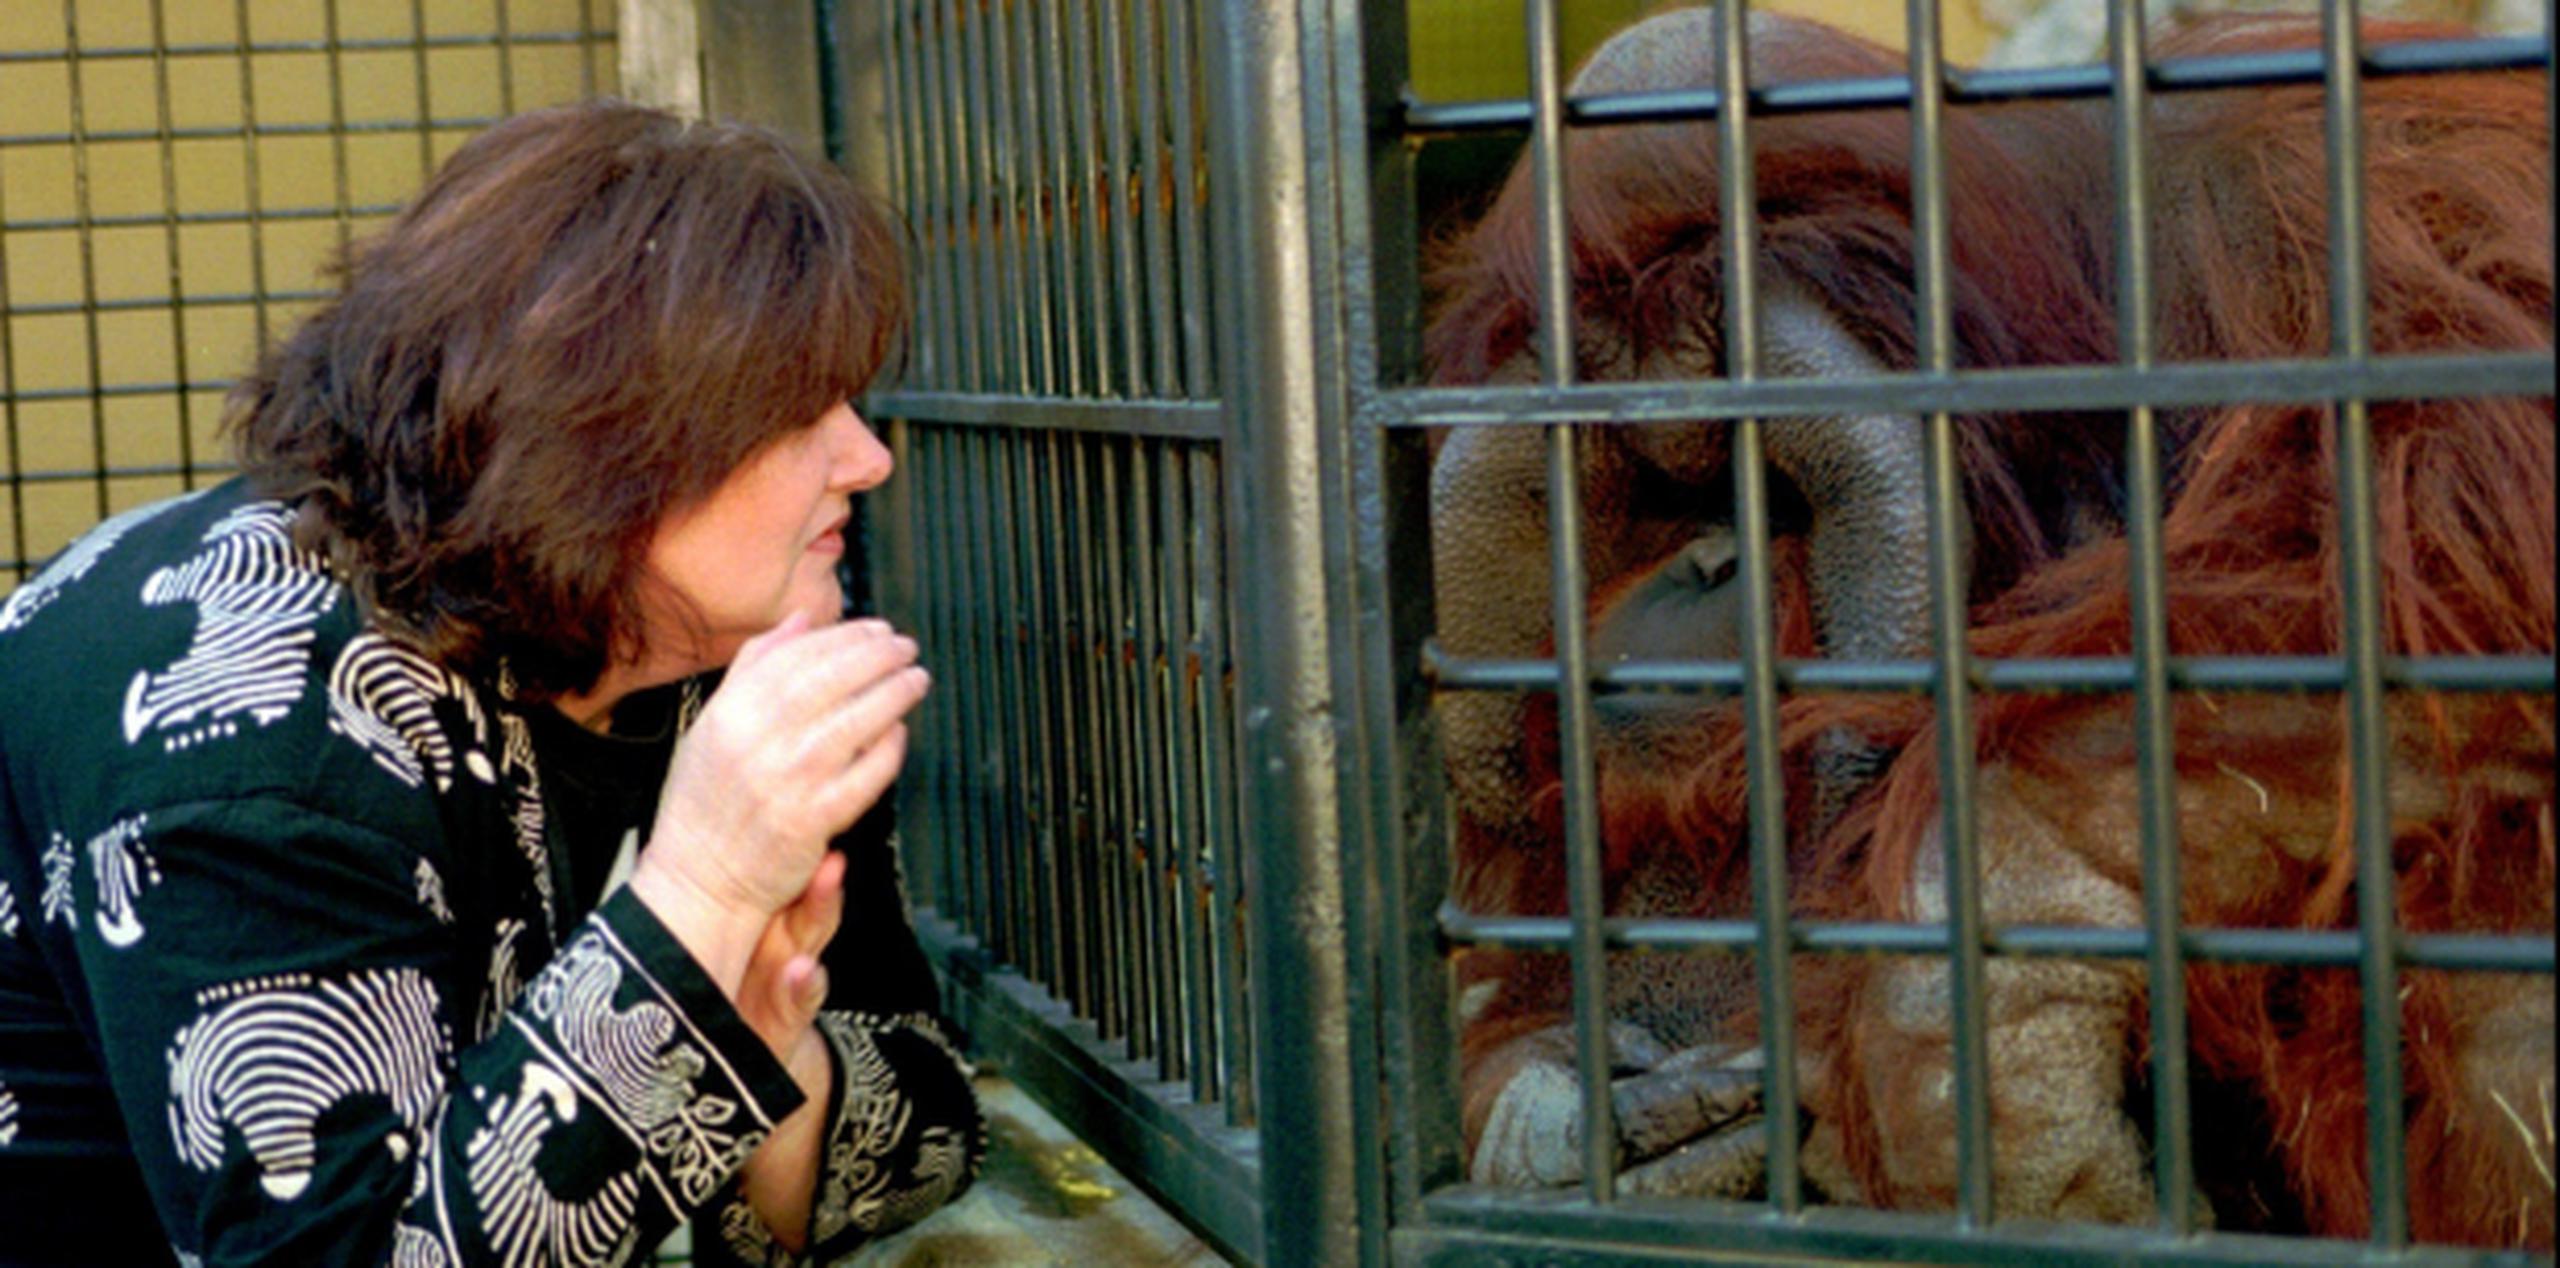 El orangután Chantek podía comunicarse a través de lenguaje de señas. En esta foto, la investigadora Lyn Miles conversa con Chantek en el zoológico de Atlanta. (Archivo)